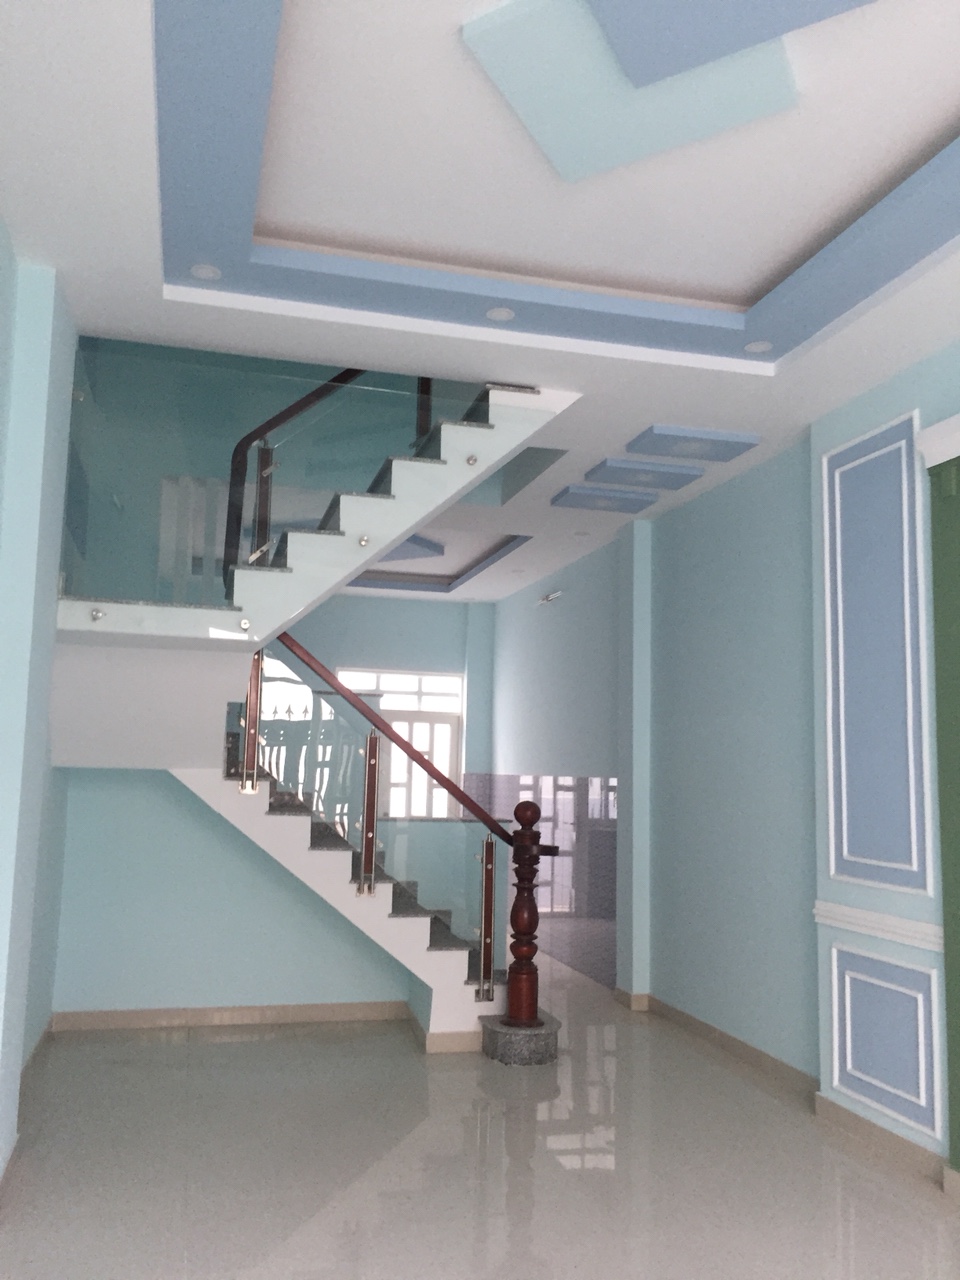 Cần bán nhà mới, đẹp hẻm 1135 Huỳnh Tấn Phát, Quận 7, DT 4x16m, 3 lầu. Giá 4,2 tỷ